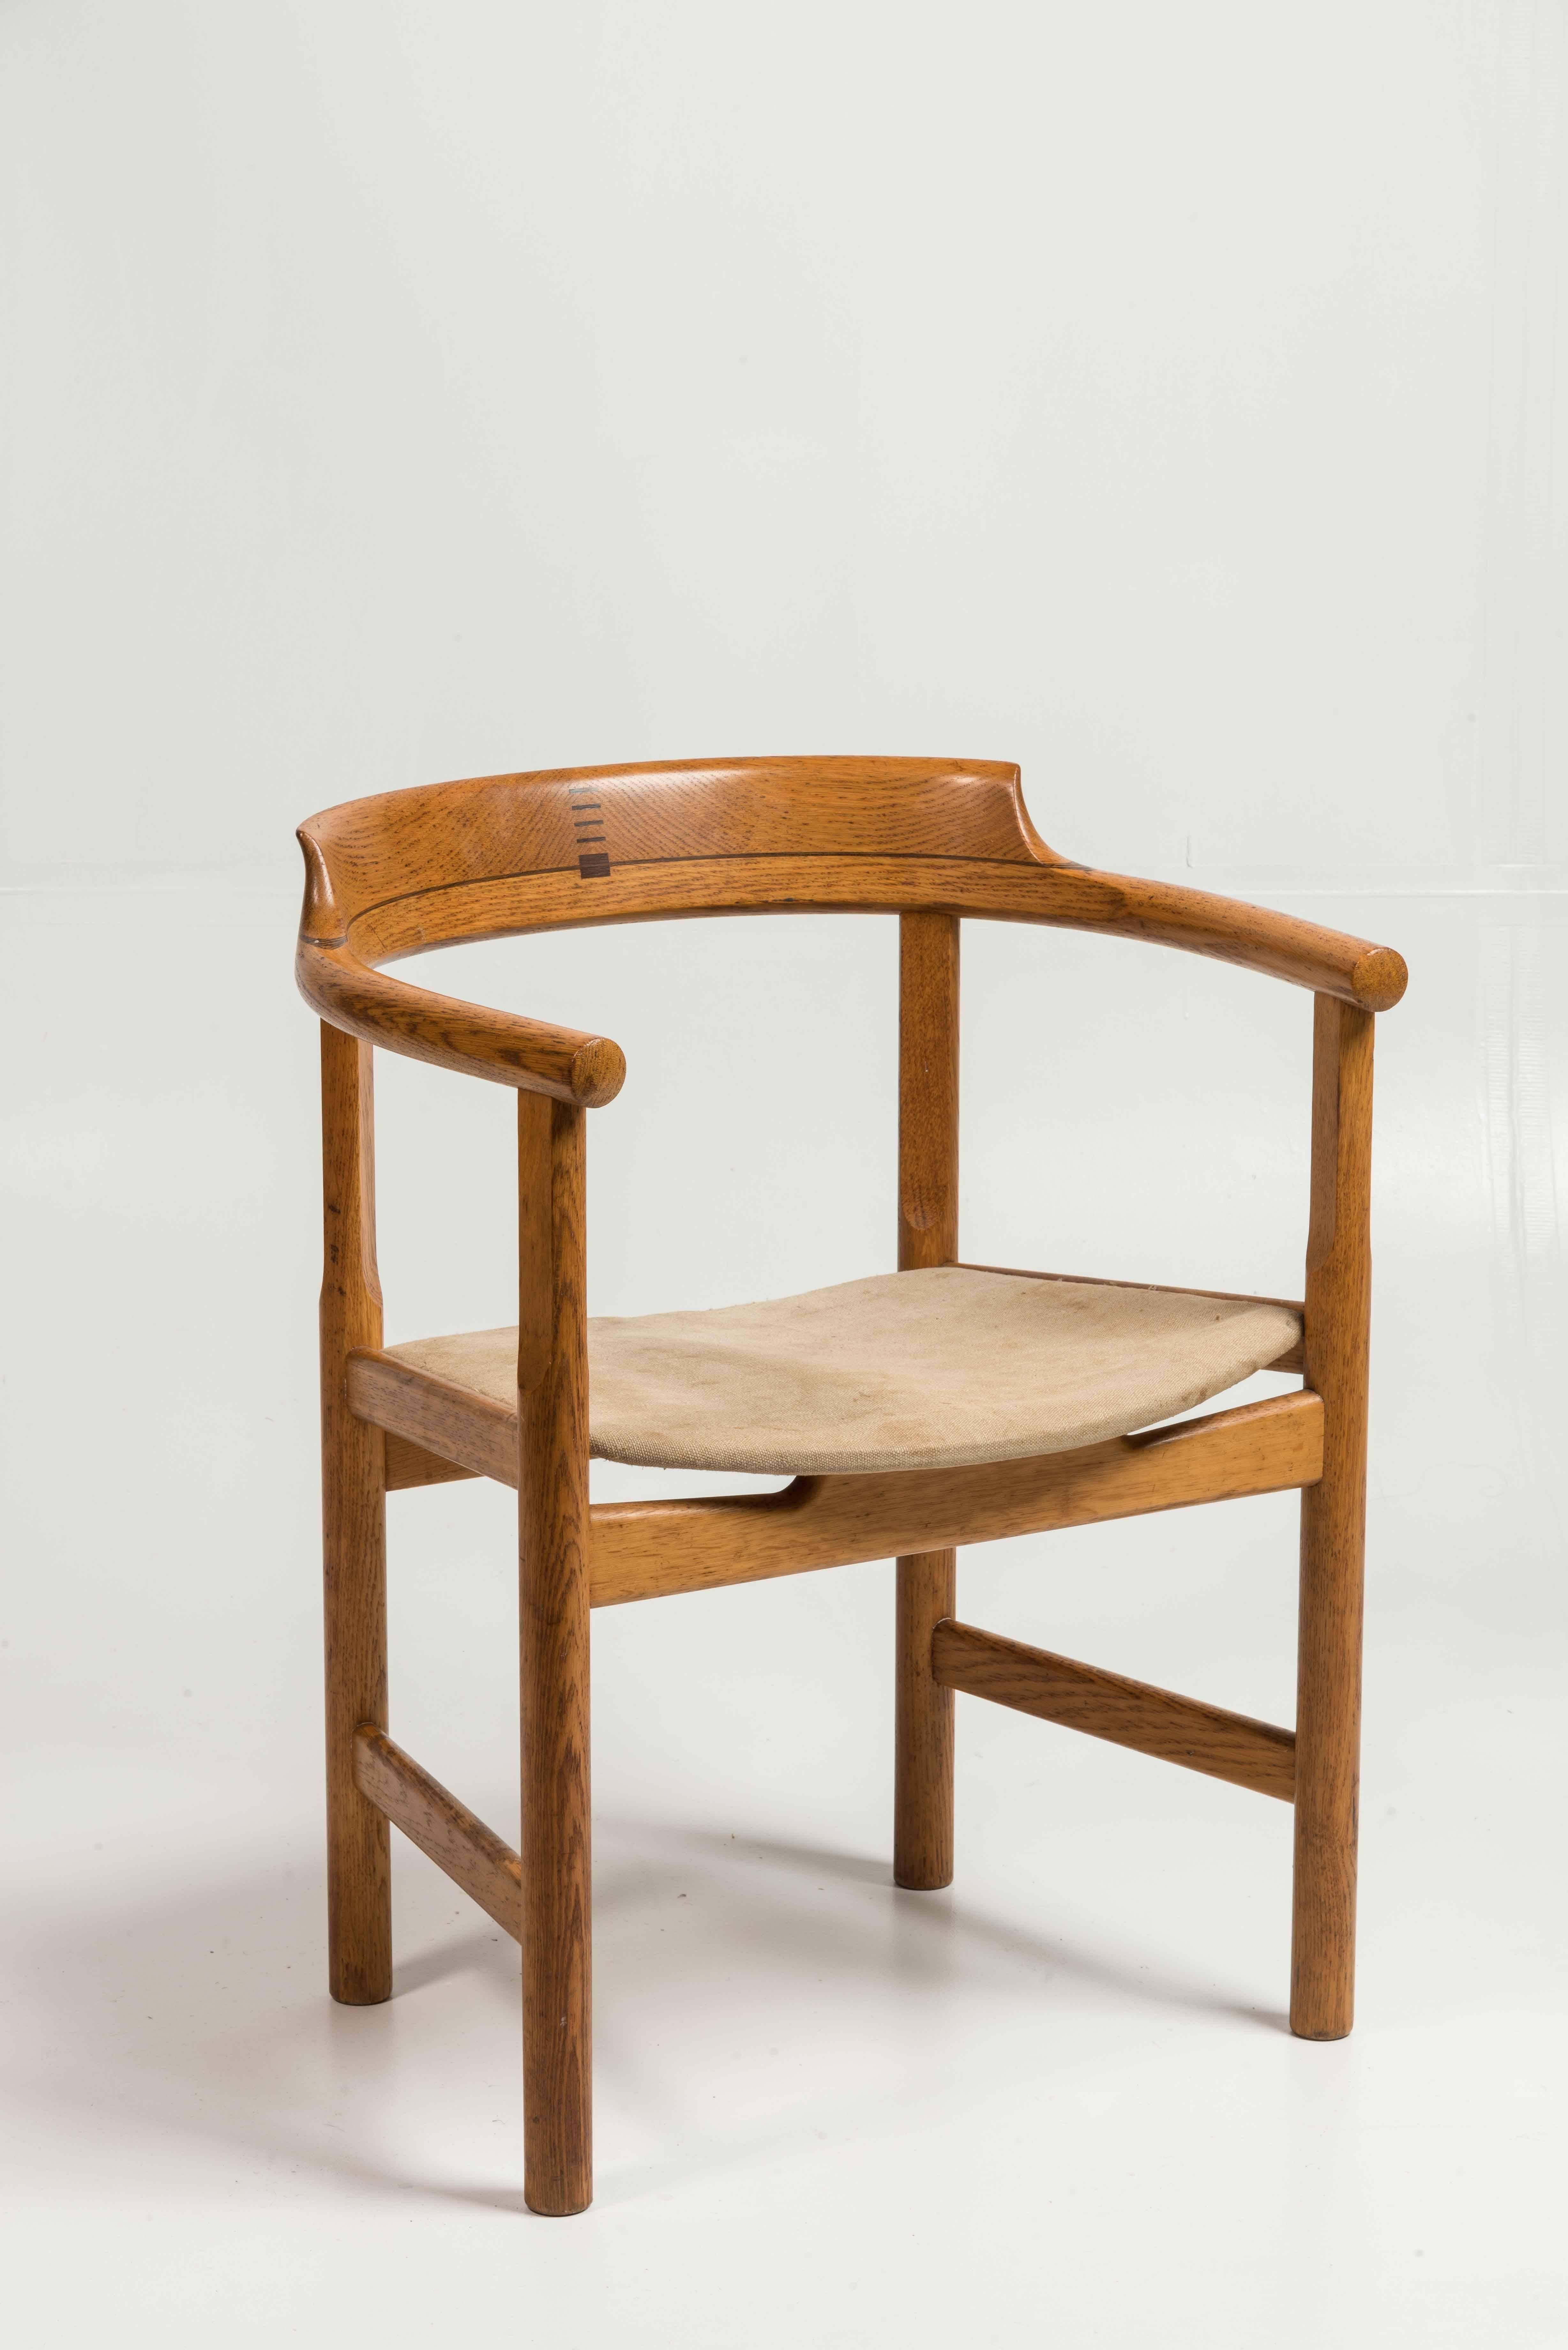 PP52 armchair designed by Hans J. Wegner for PP Møbler.

Note: The 